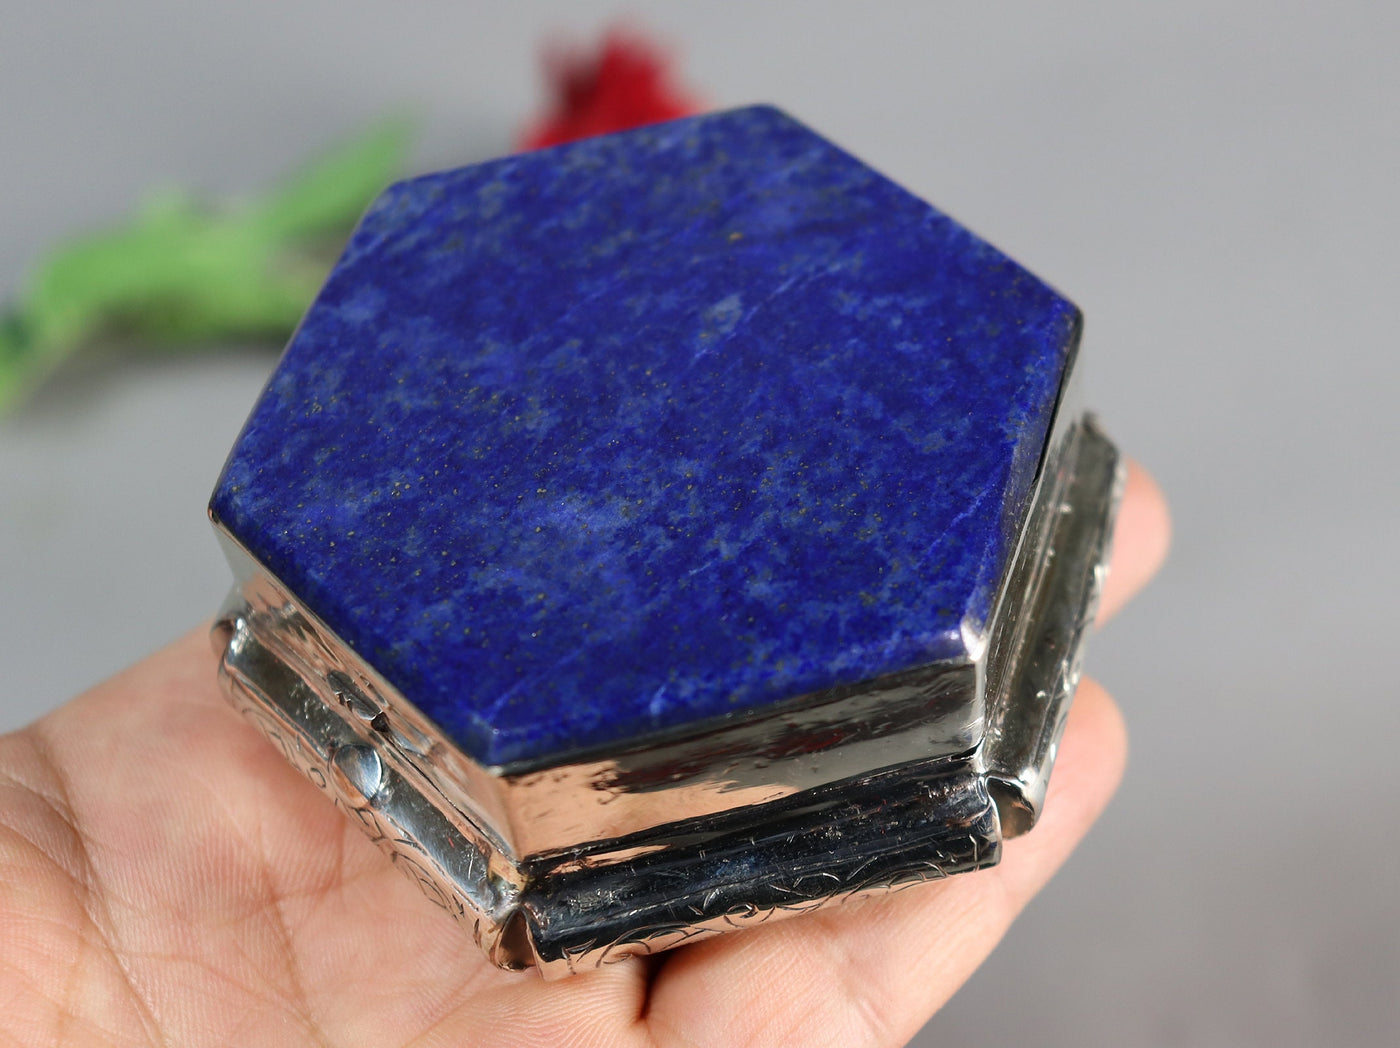 Extravagant handgefertigte messing   Lapis lazuli -Edelstein büchse Schmuck Dose schatulle Kiste schmuckkiste Afghanistan  Nr-IT54-63  Orientsbazar   